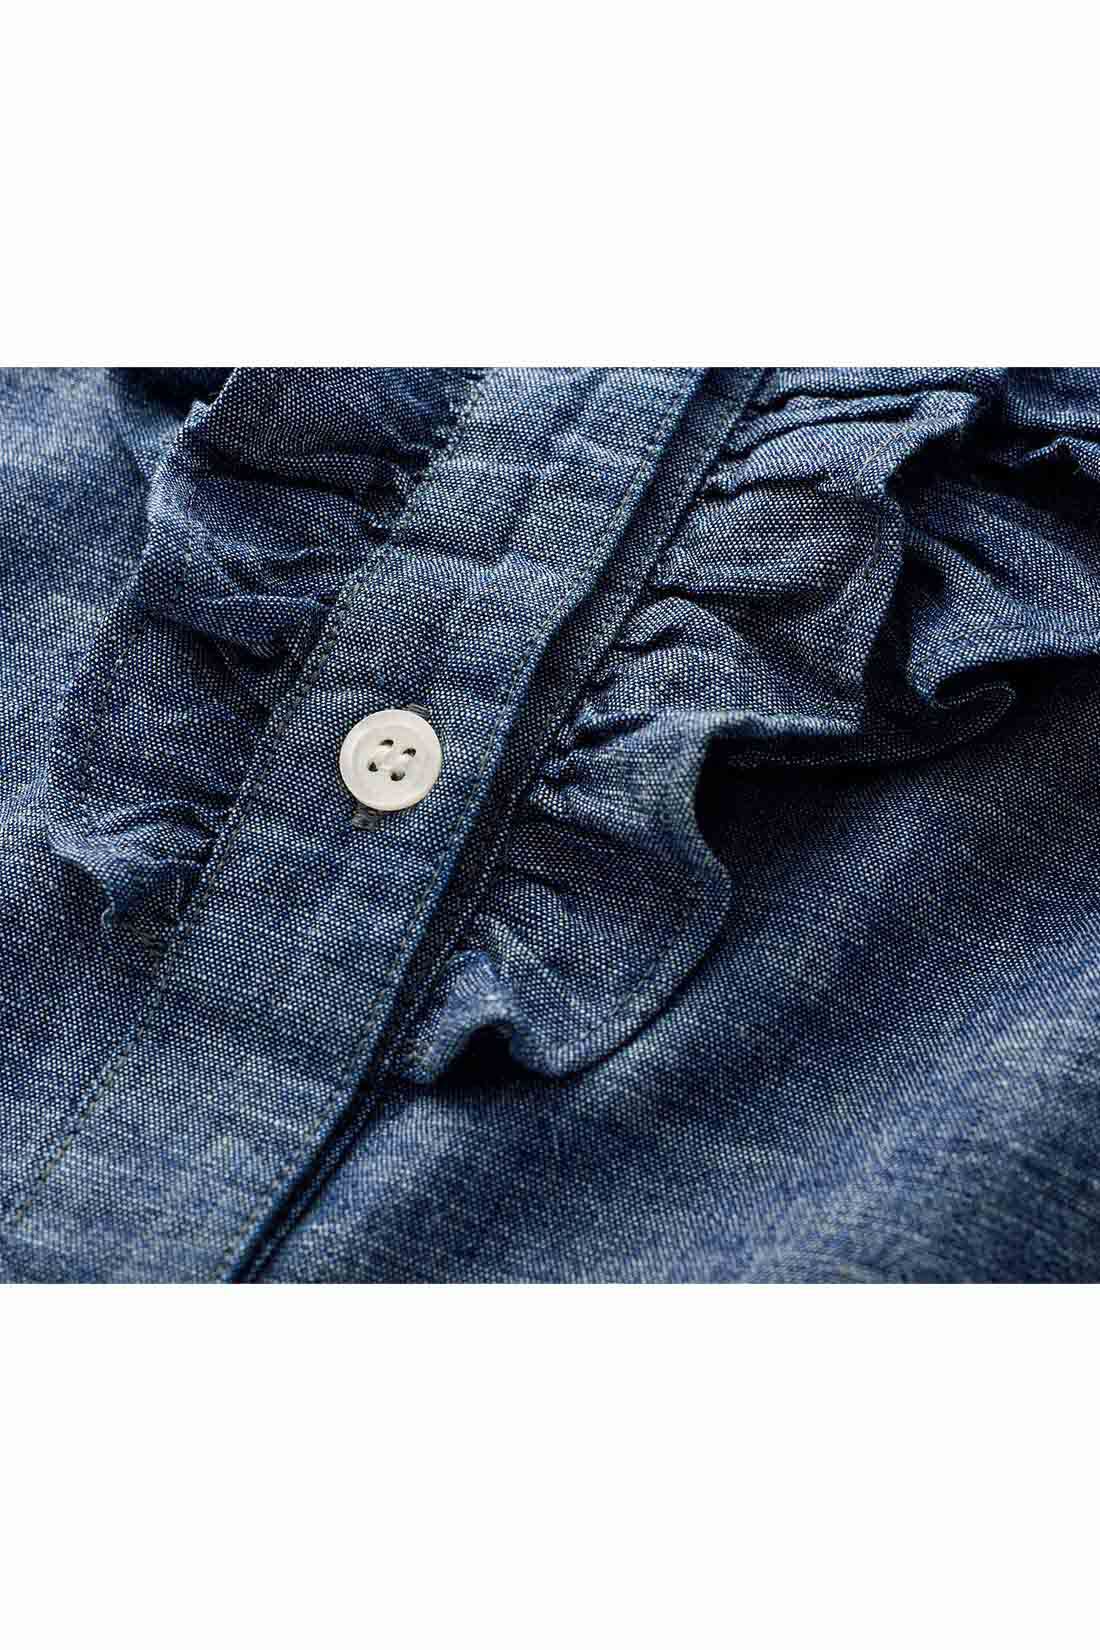 THREE FIFTY STANDARD|THREE FIFTY STANDARD インディゴブルーのフリルシャツ|オーガニックコットン100％の糸で織り上げた、日本製のインディゴシャンブレー生地を使用。